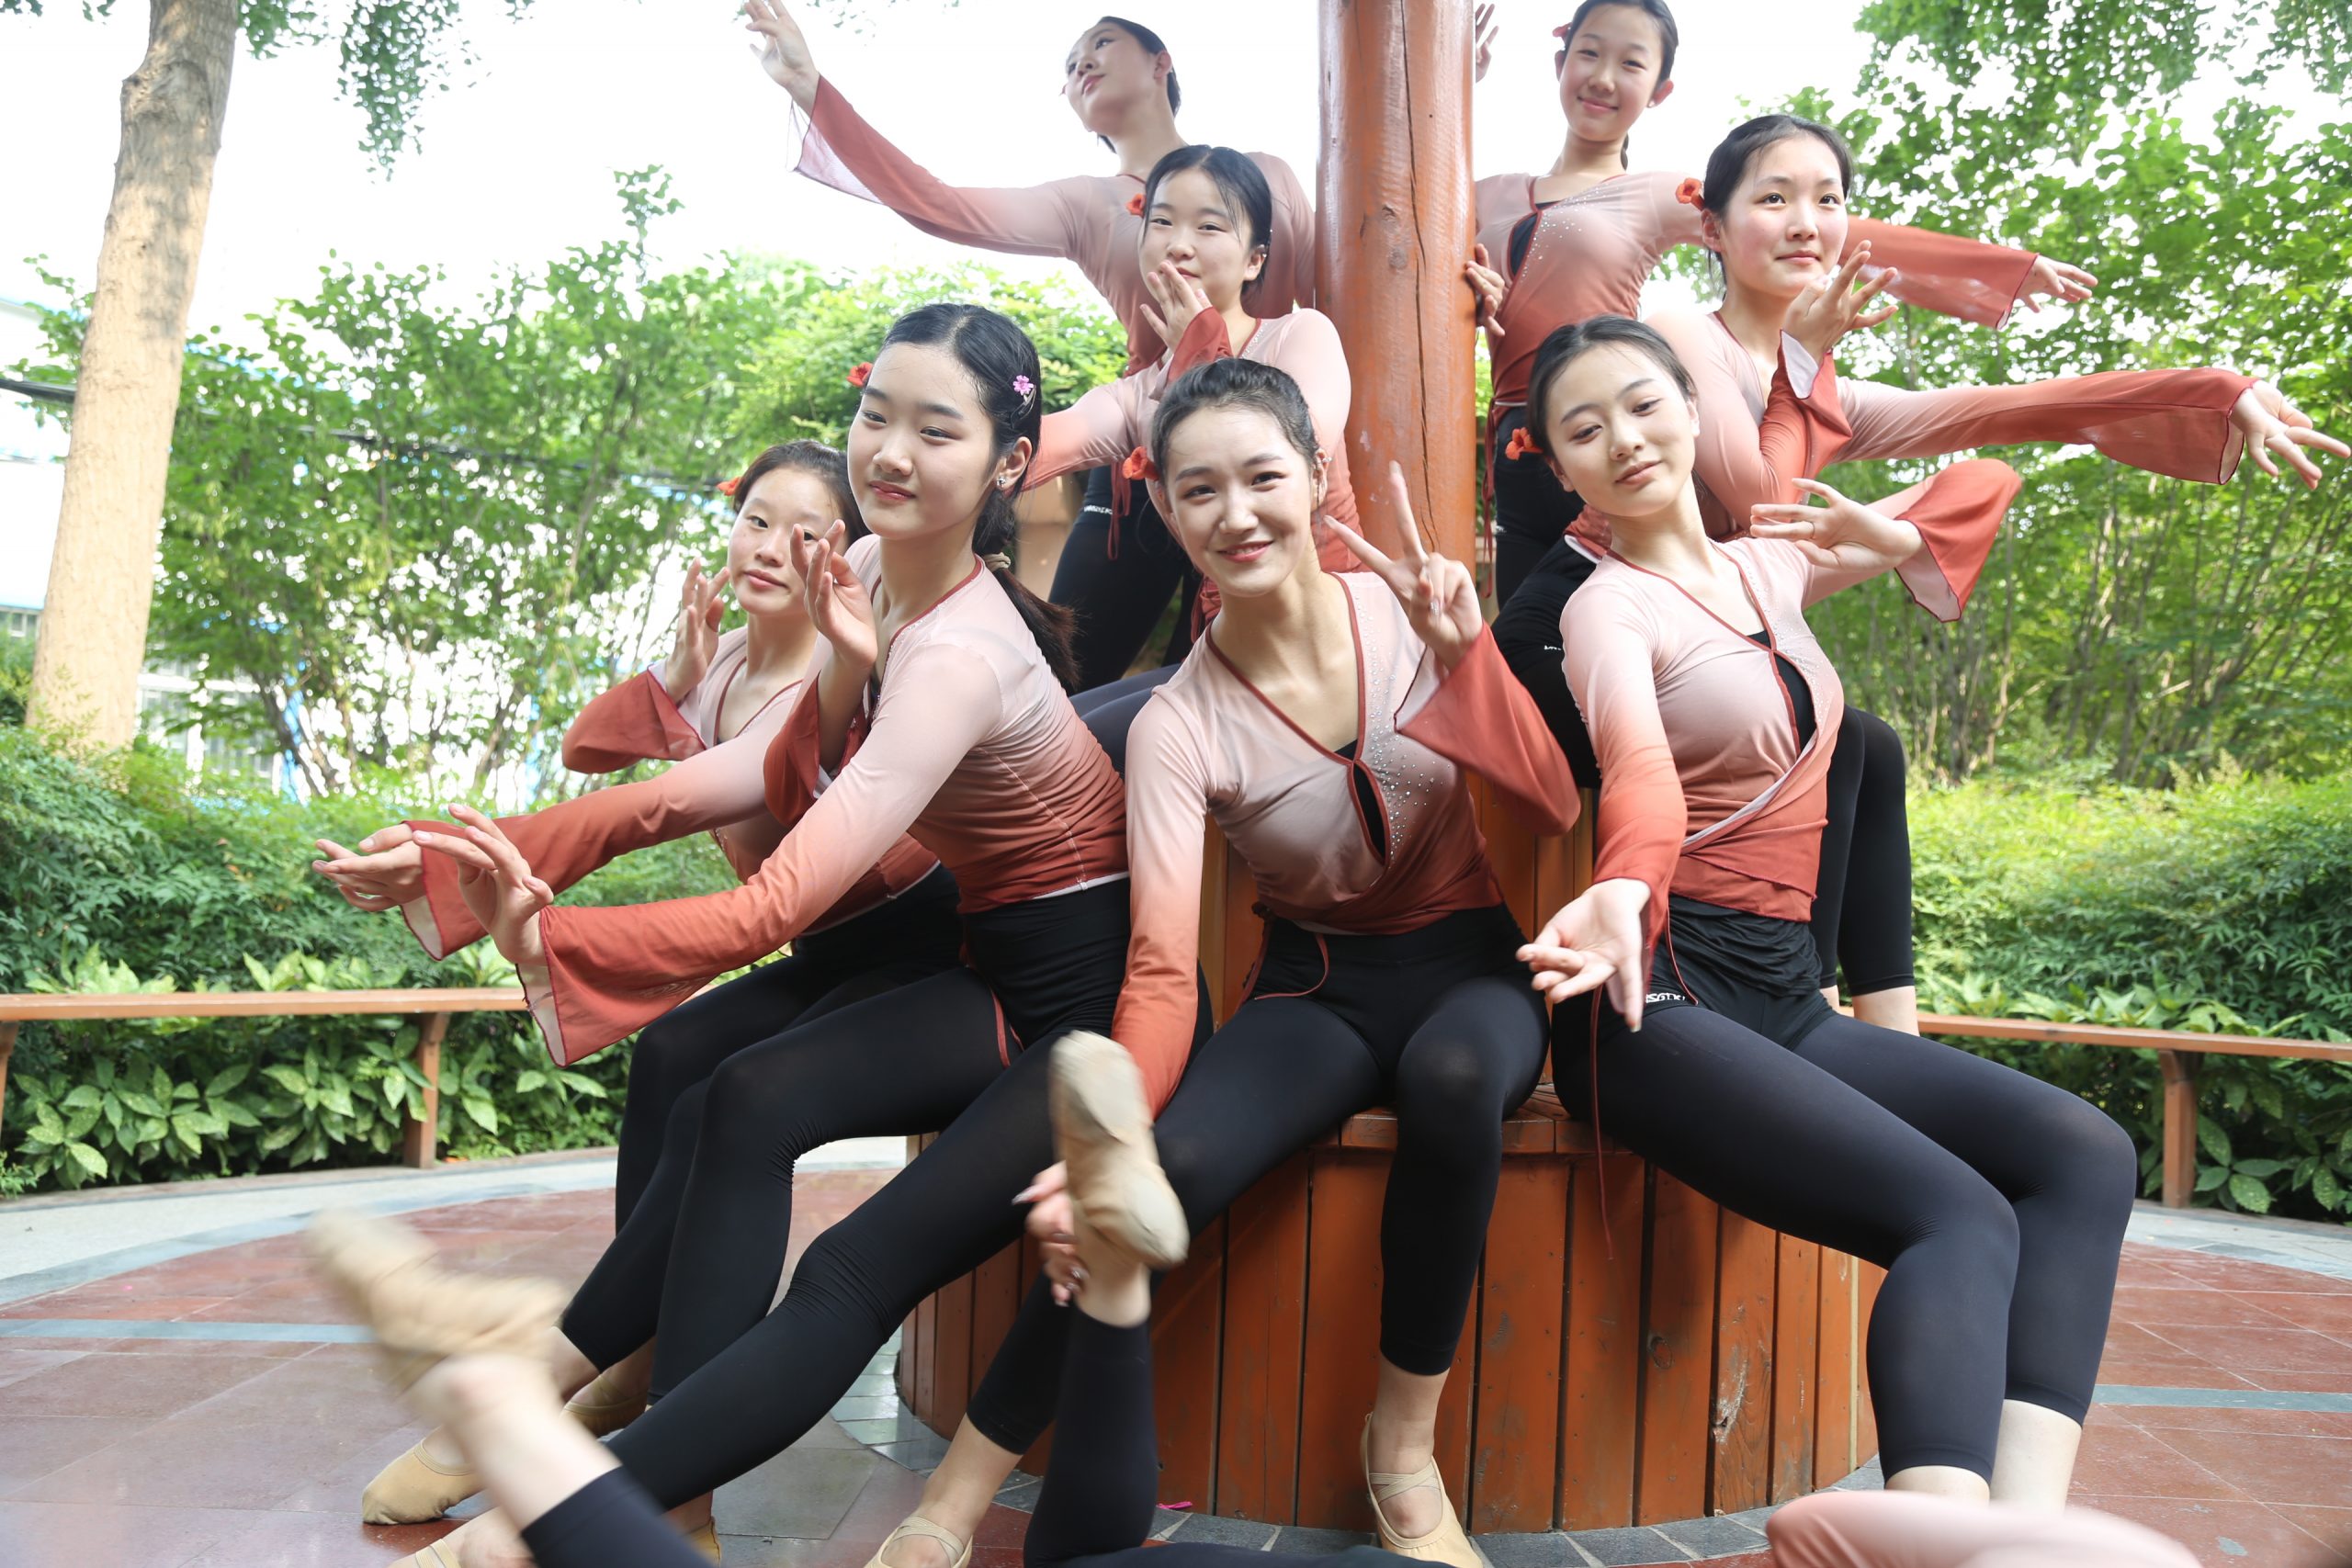 舞蹈表演专业的同学们在校园拍照留念 (http://www.xifumi.com/) 校内新闻 第2张